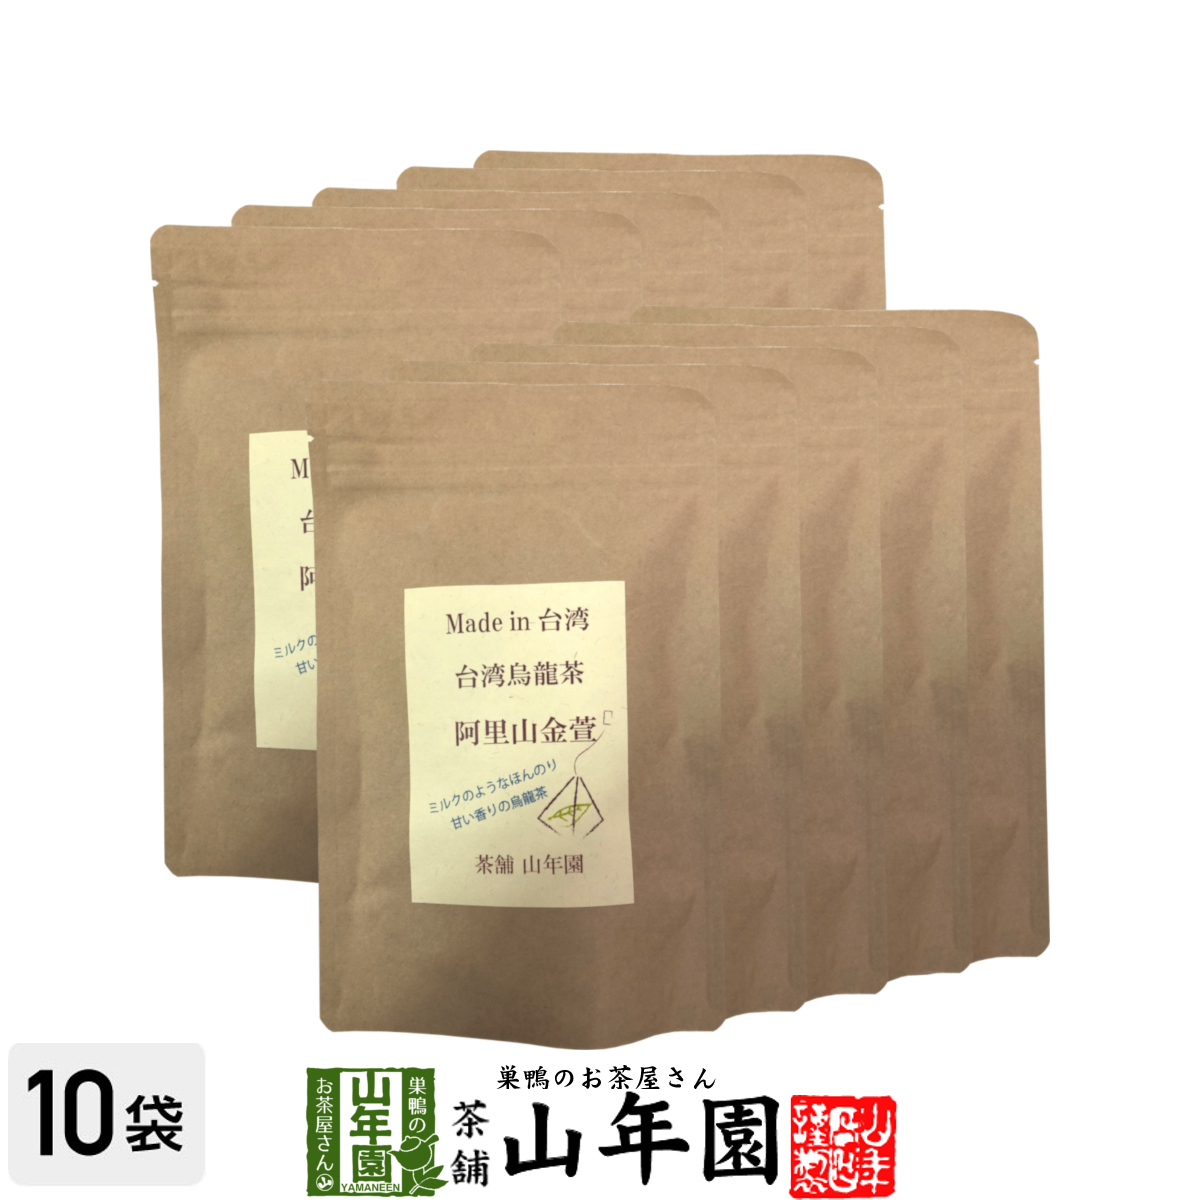 台湾烏龍茶 阿里山金萱 2g×12包×10袋セット 台湾の阿里山で収穫された茶葉を使った烏龍茶 ほのかにミルクのような香り_画像1